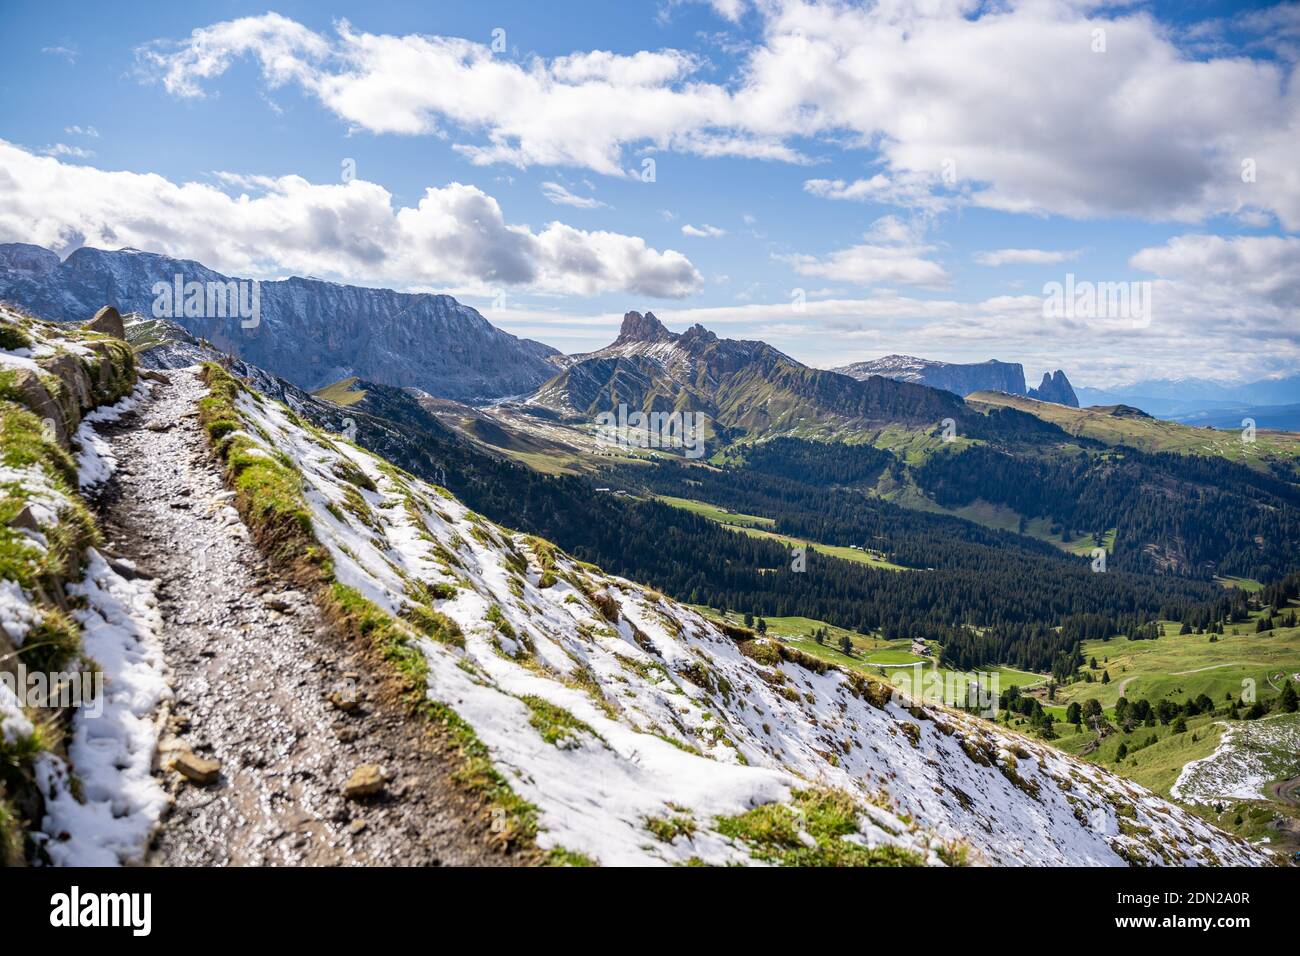 Blick auf die Bergkette schlern in den österreichischen dolomiten vom Trekking Trail Stockfoto